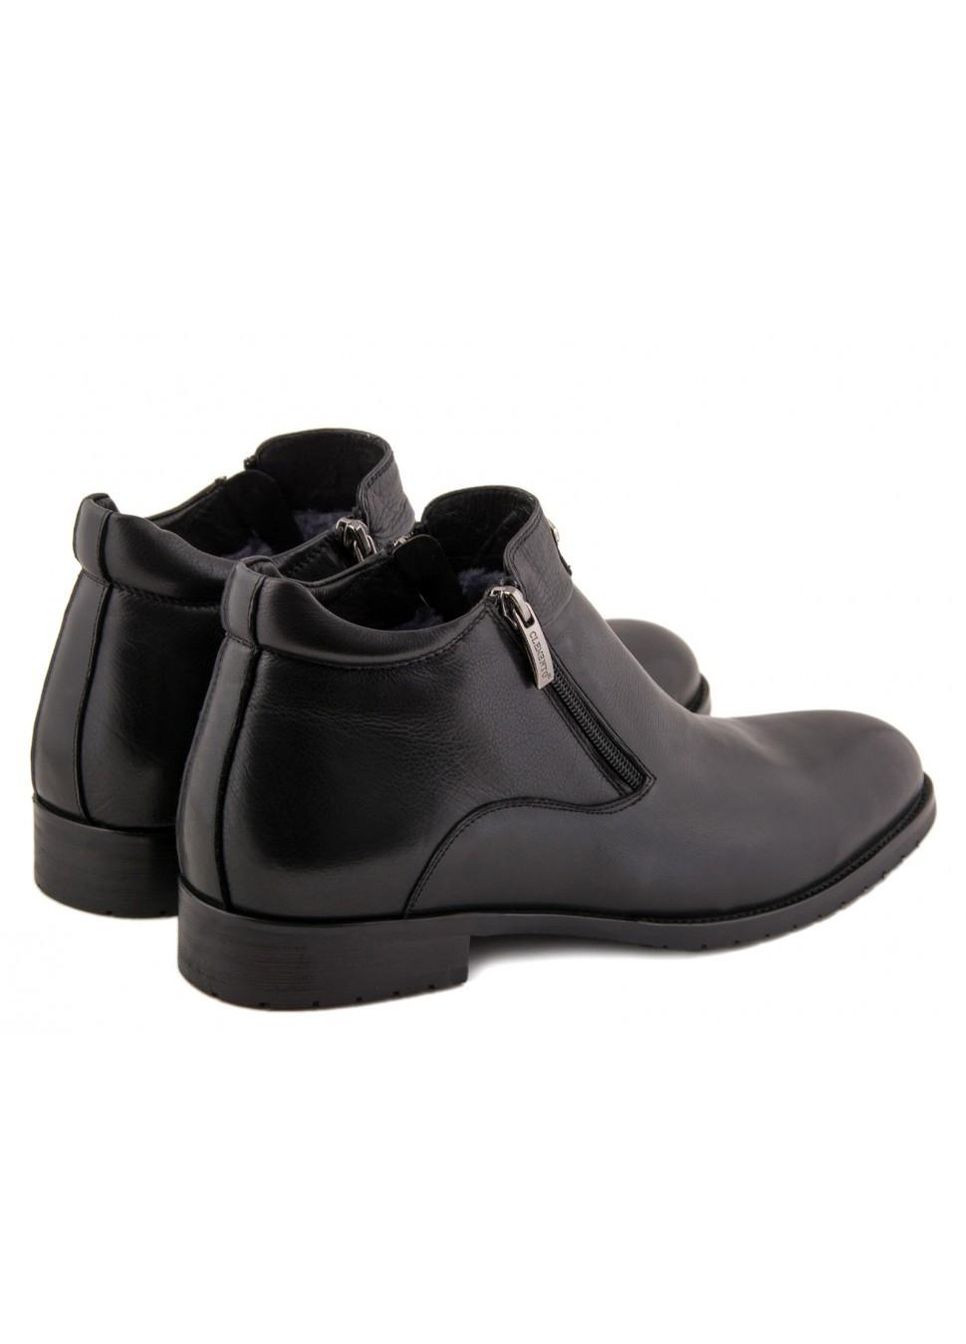 Черные зимние ботинки 7154627 38 цвет черный Clemento